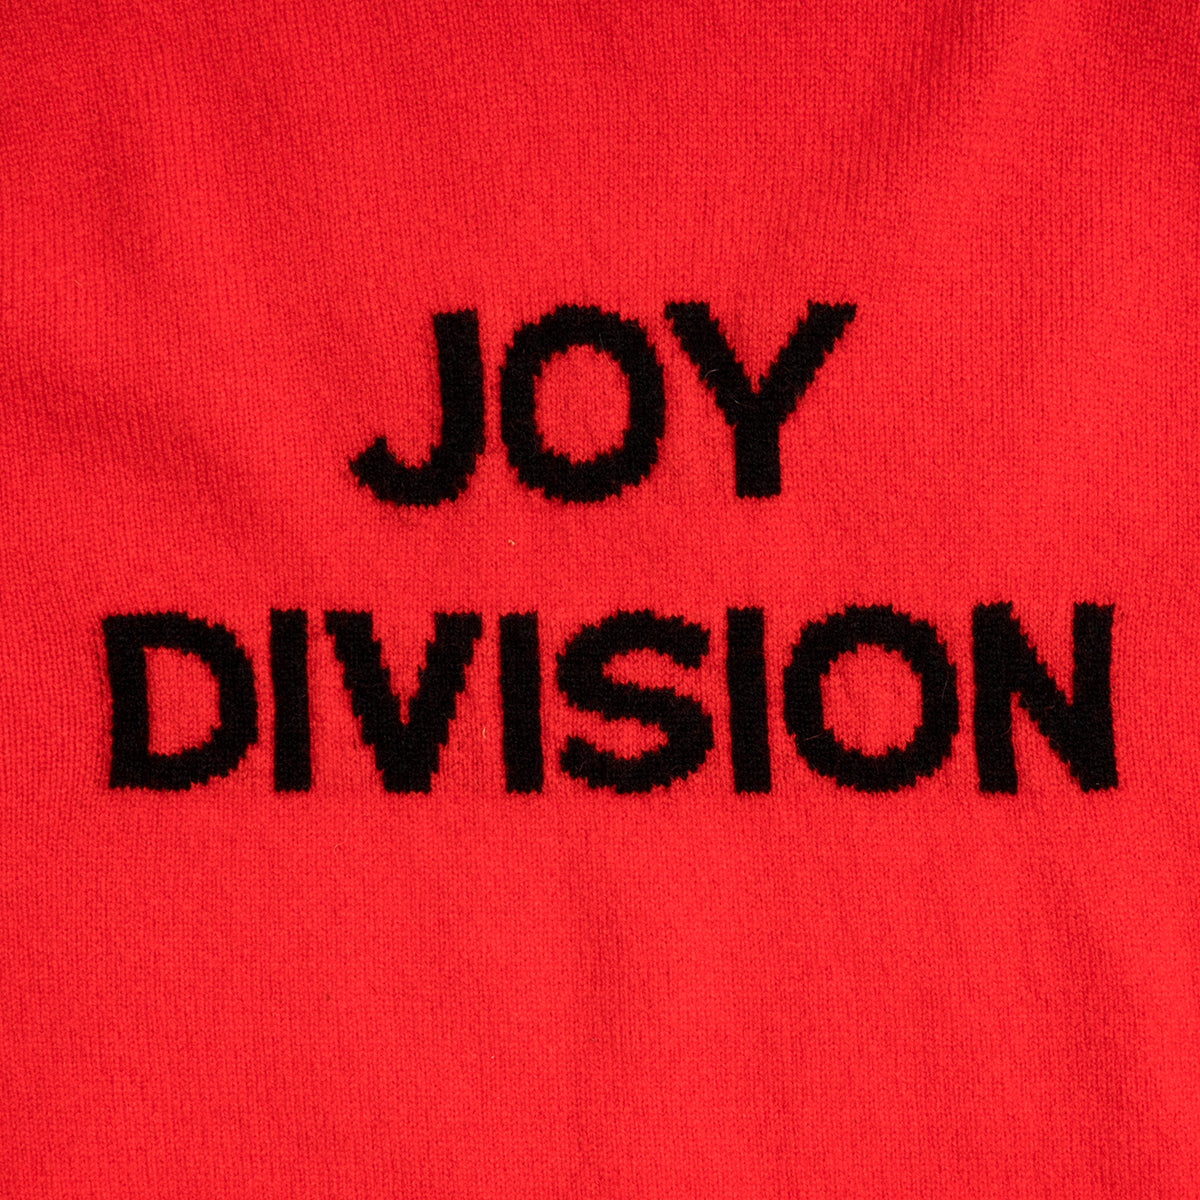 Joy Division | Red & Black | Men's